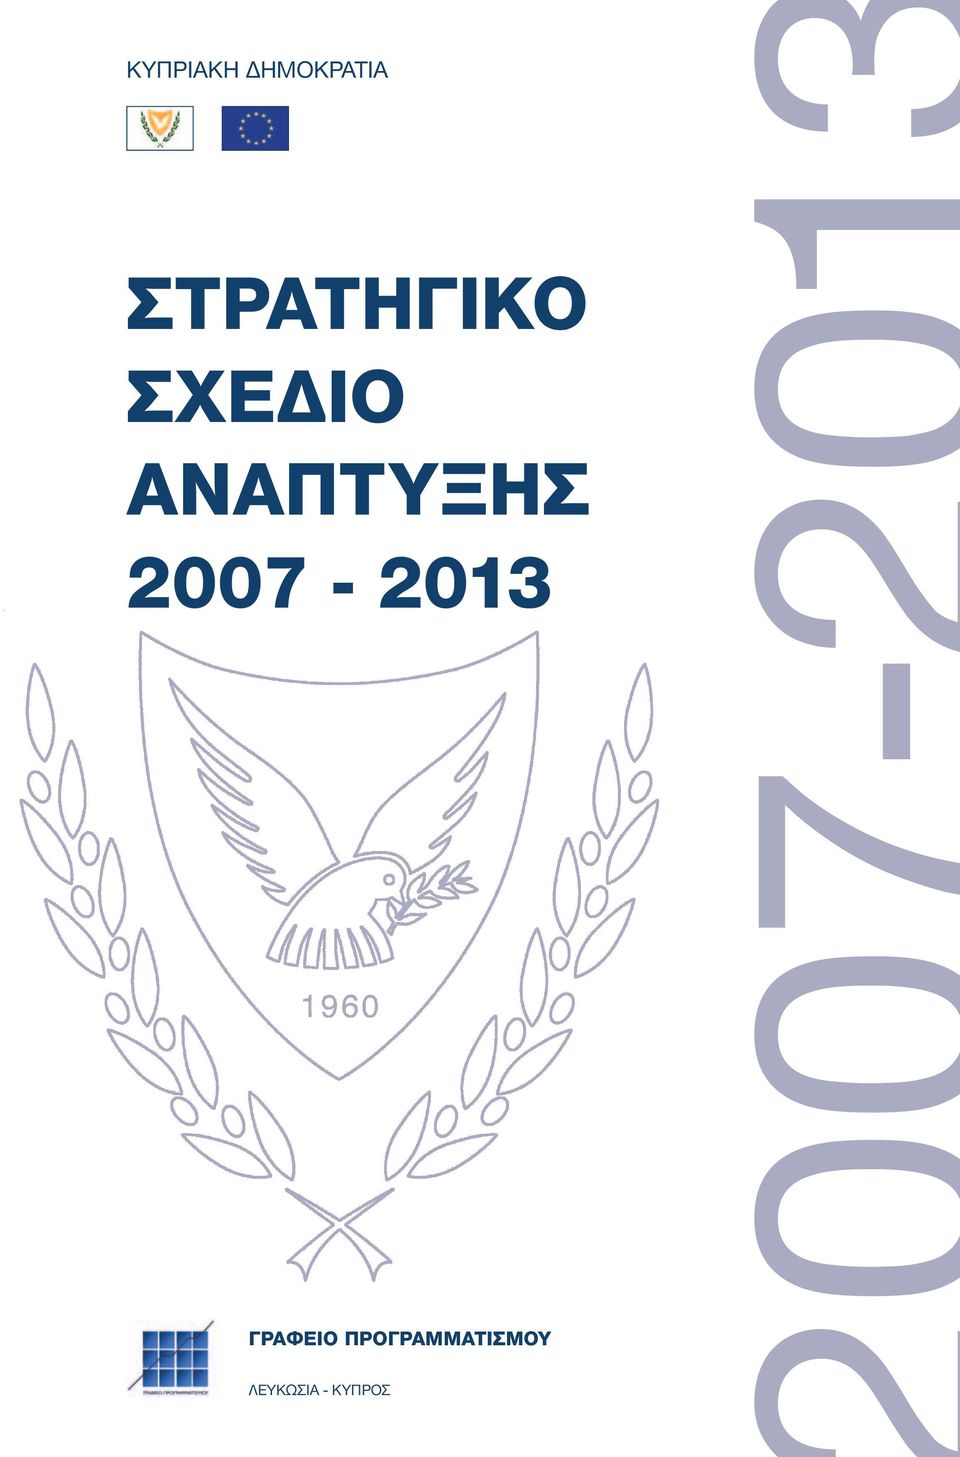 2007-2013 ΓΡΑΦΕΙΟ